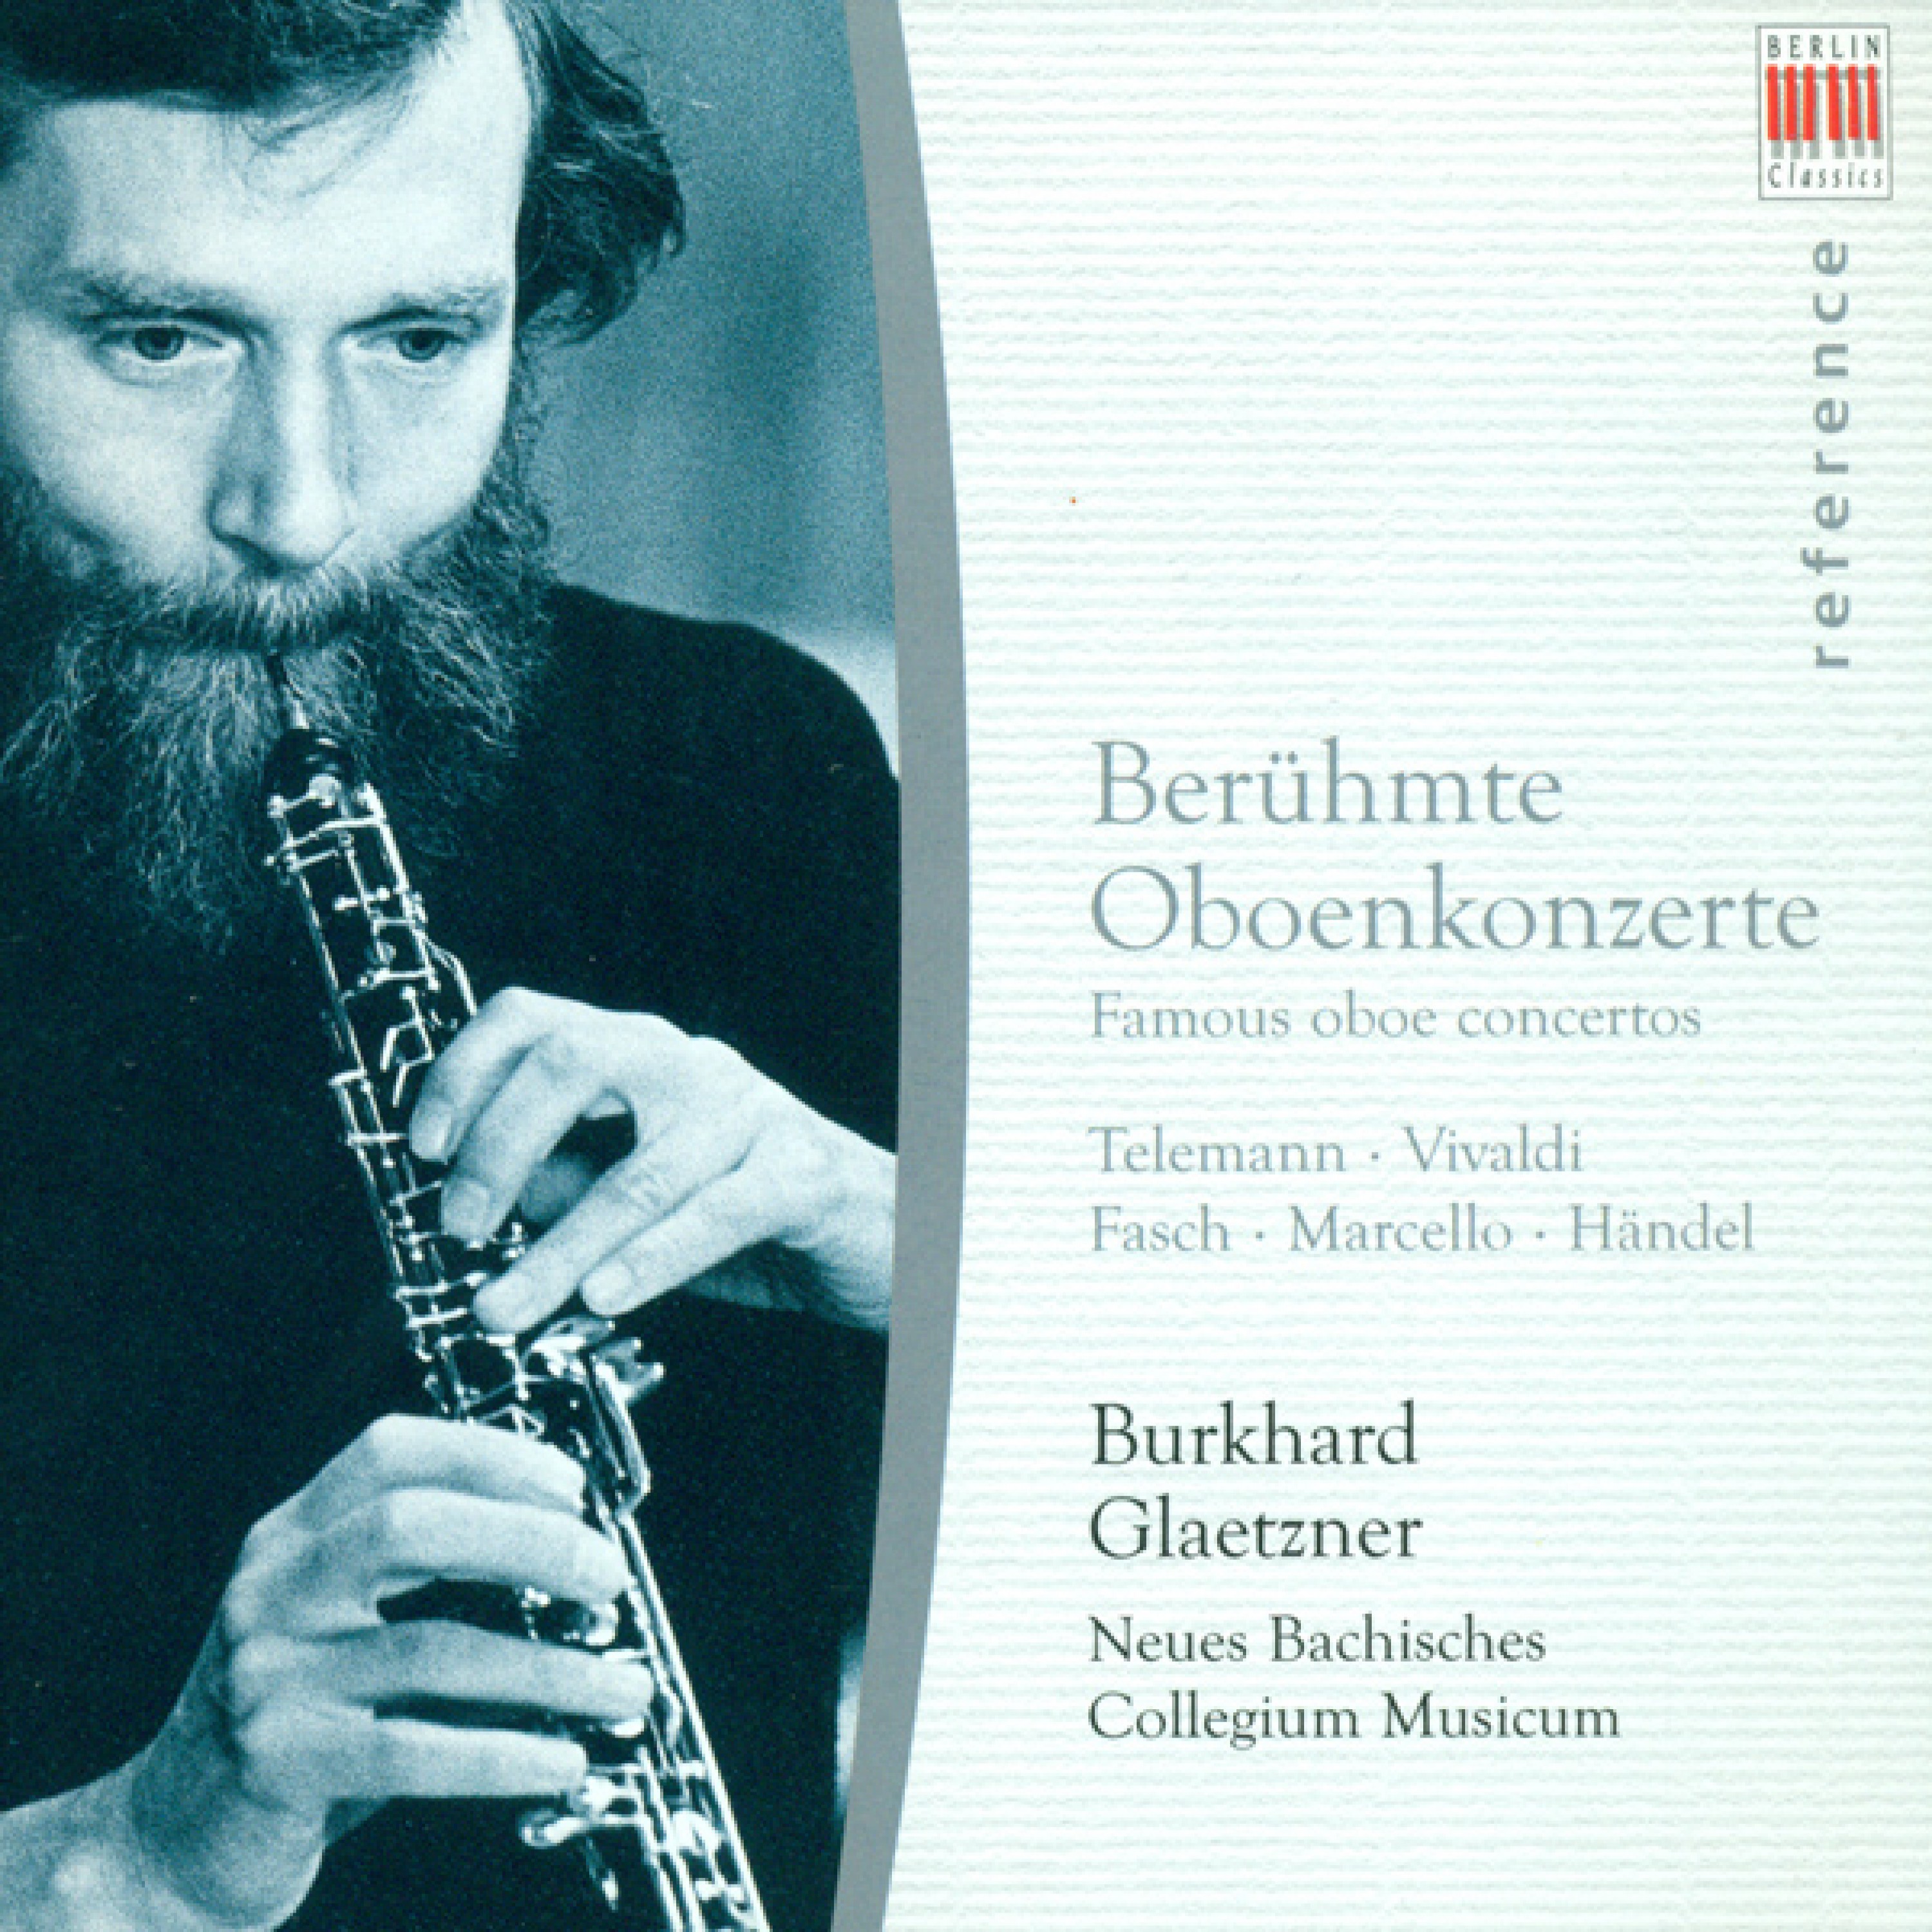 Oboe Concerto No. 3 in G Minor, HWV 287: III. Sarabande (Largo)